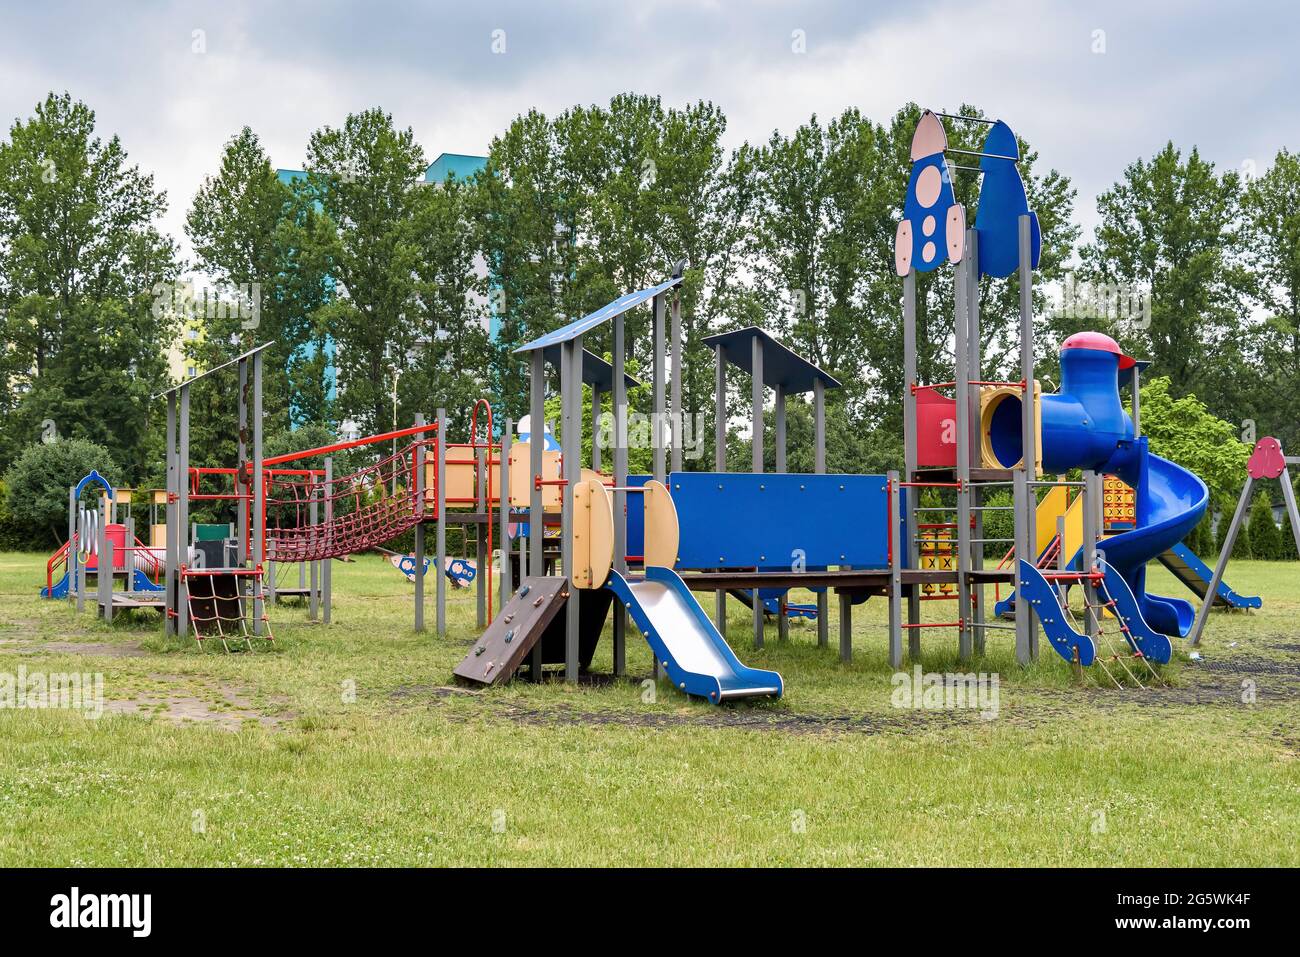 Vista del parque infantil vacío al aire libre en un día nublado Foto de stock